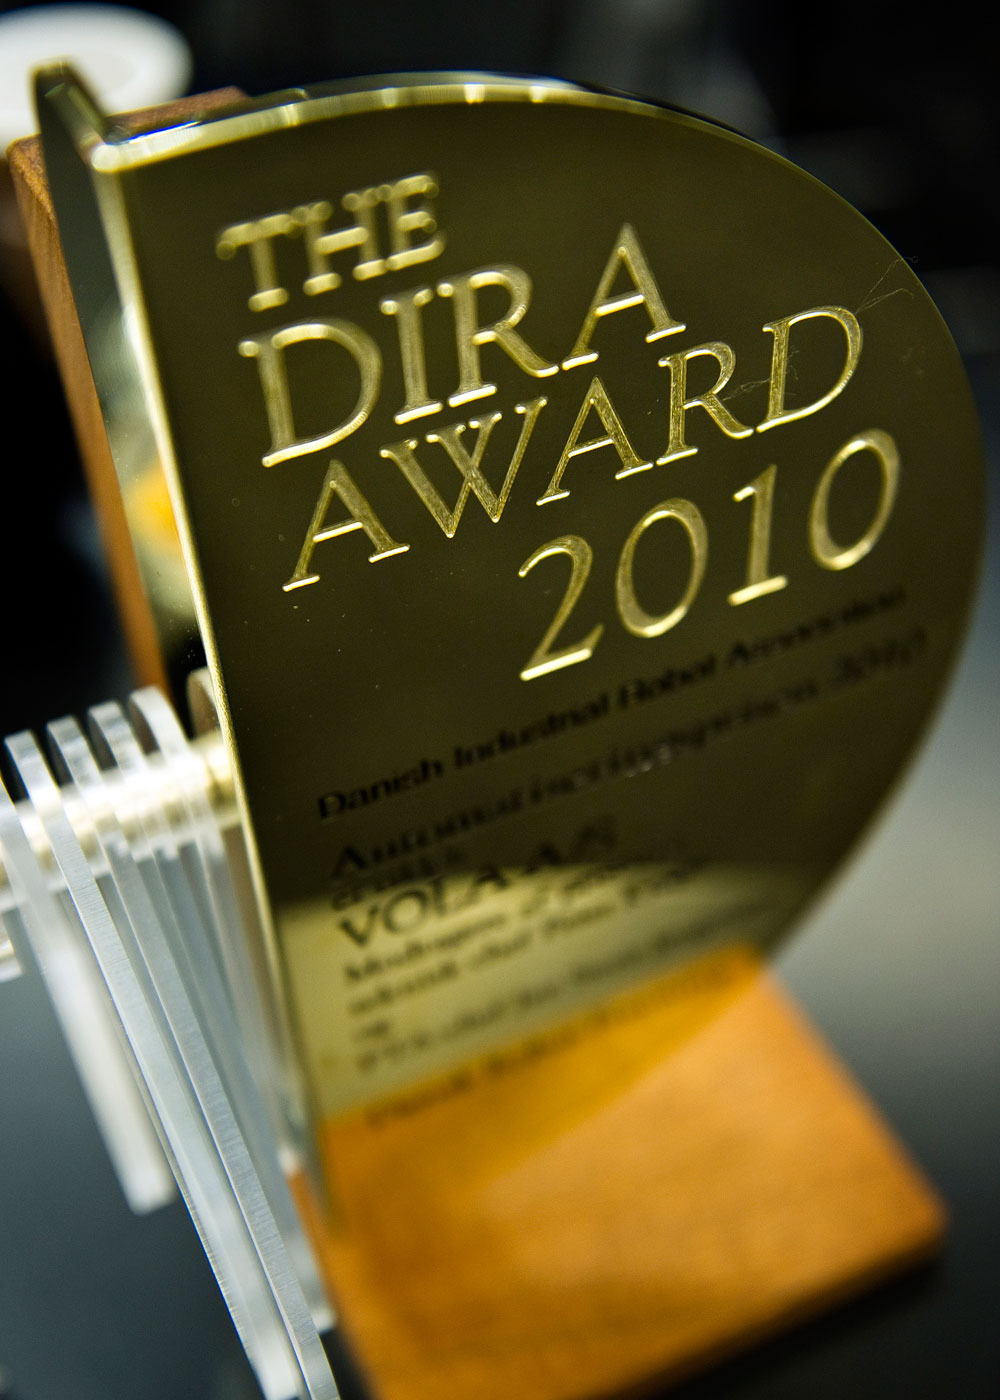 VOLA gewann den DIRA Award 2010 der dänischen Industrial Robot Association.